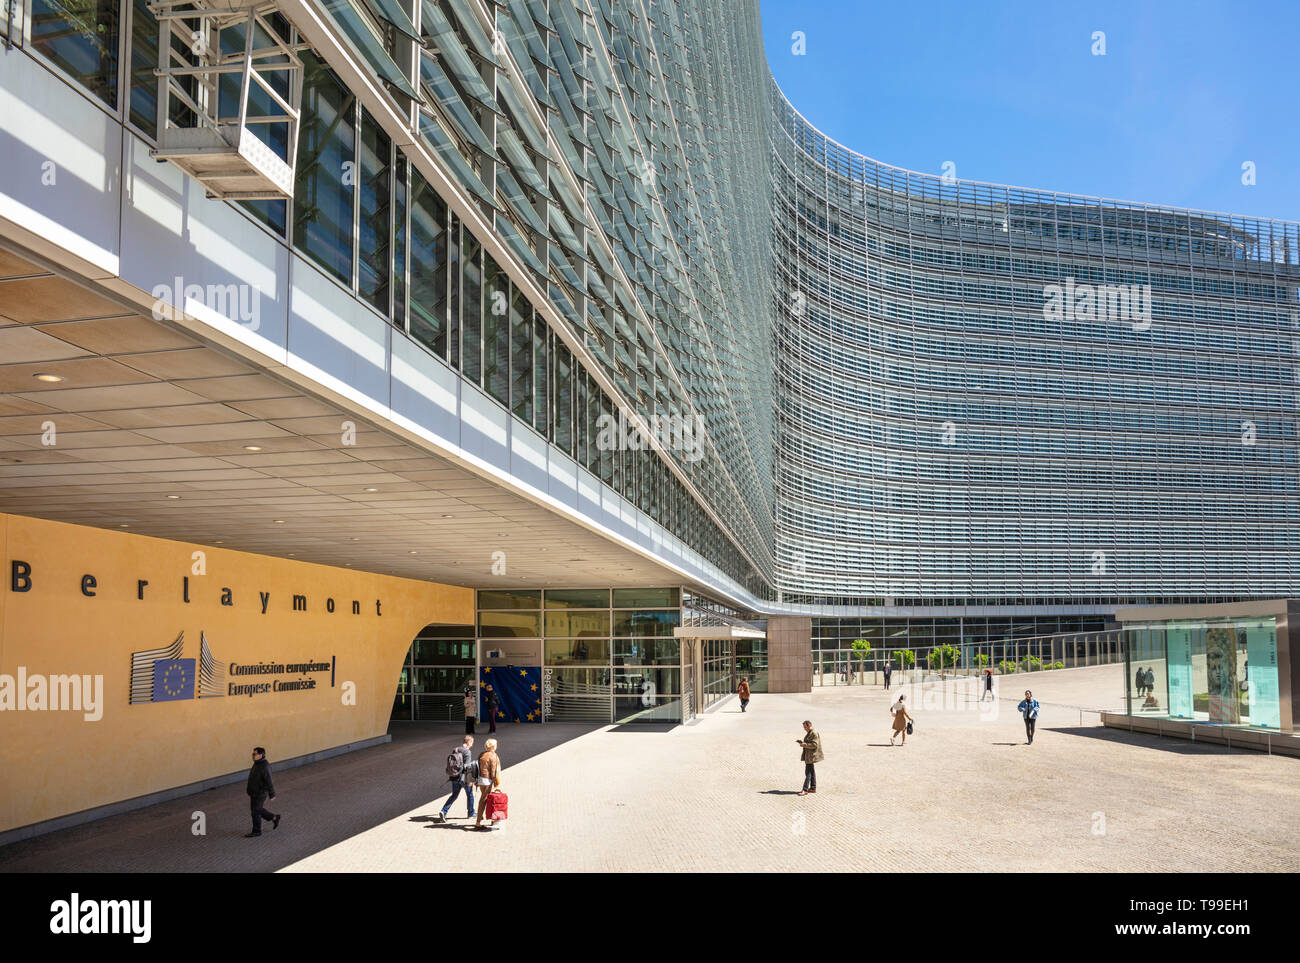 Sitz der Europäischen Kommission Gebäude Gebäude der EU-Kommission Europäische Kommission Gebäude Berlaymont, Brüssel, Belgien, EU, Europa Stockfoto